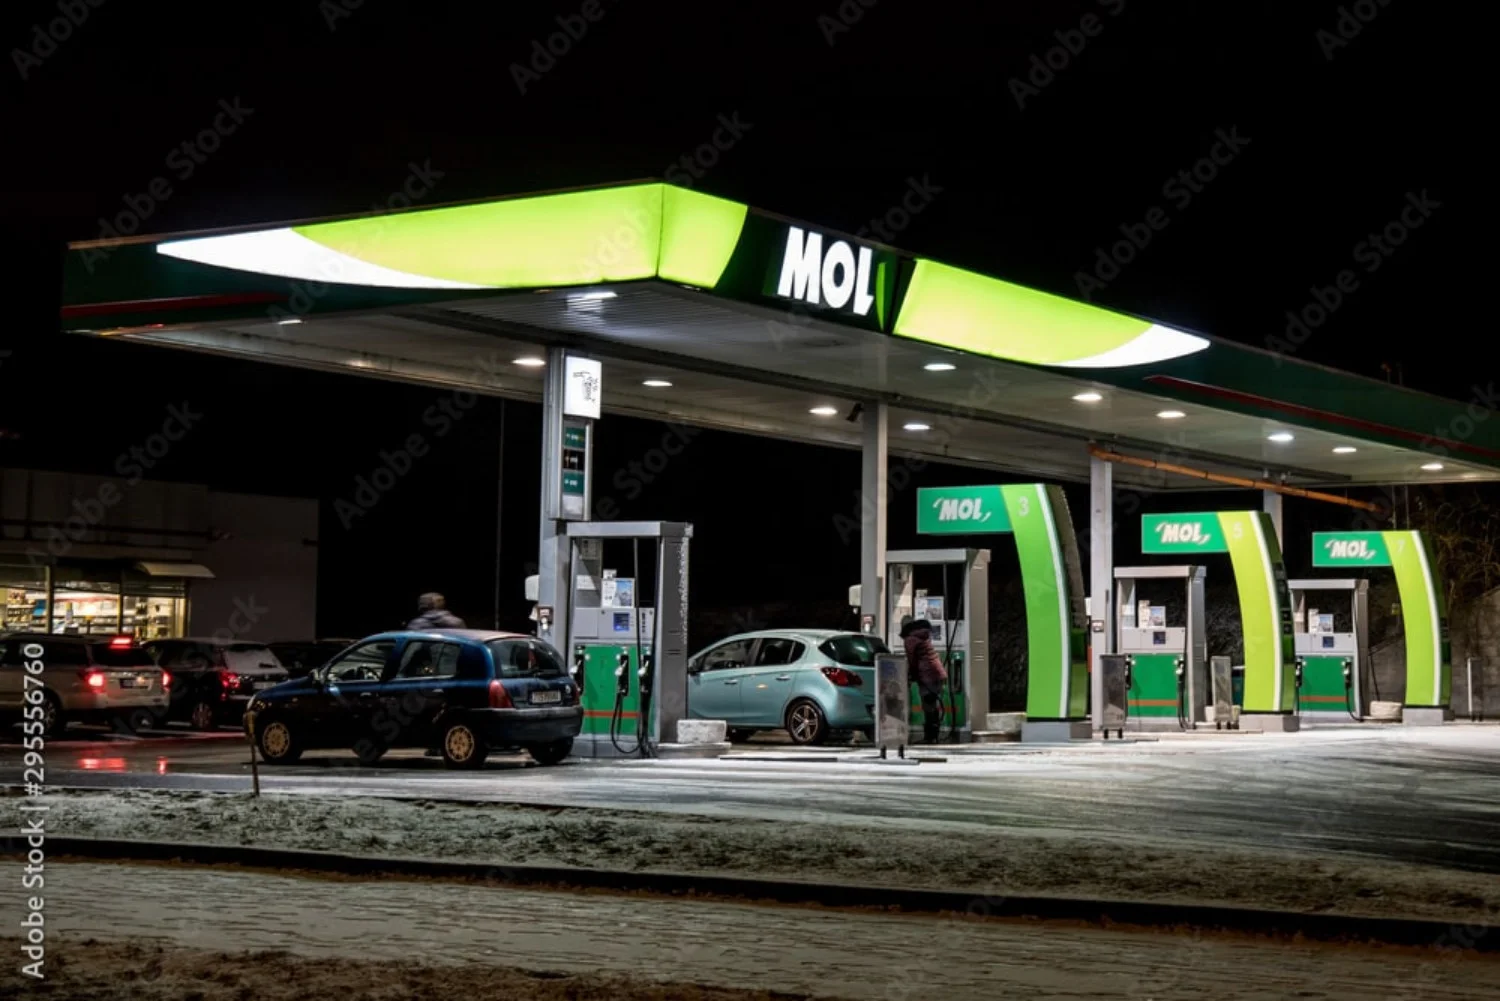 Le stazioni di servizio MOL offrono una serie di servizi complementari alla fornitura di carburante, rendendo più confortevoli i viaggi in auto.